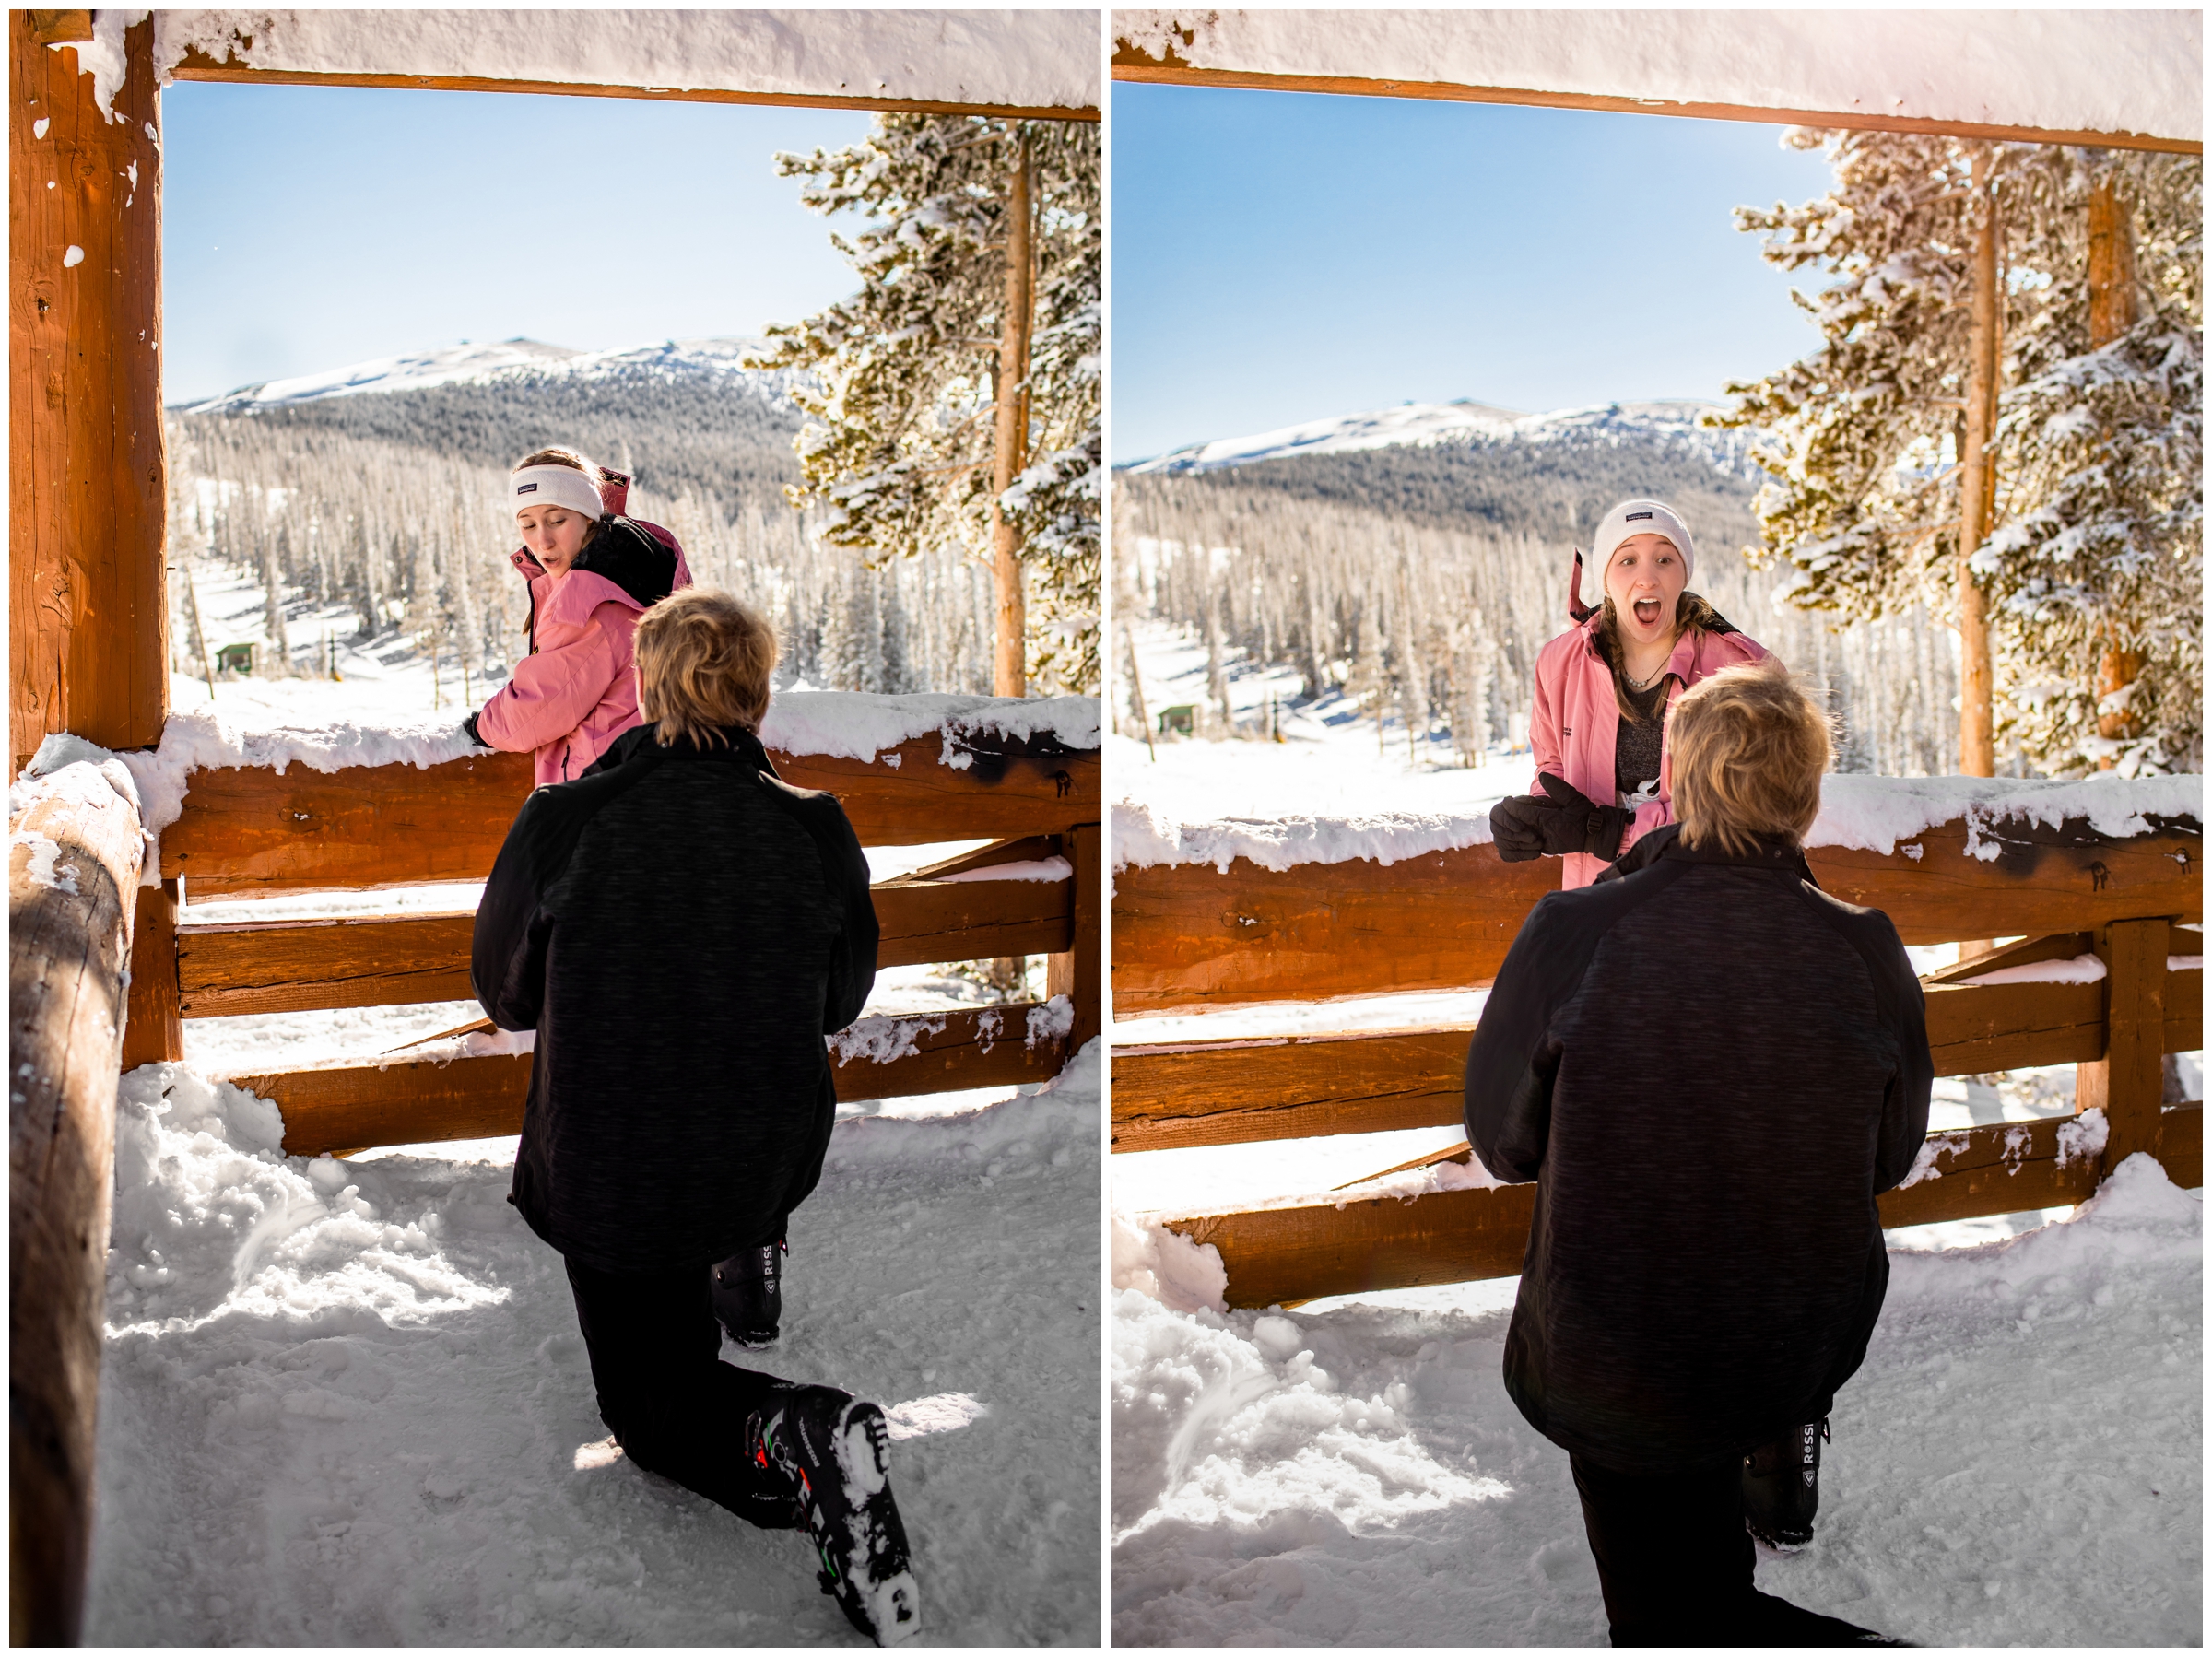 guy proposing to girlfriend at Colorado ski resort 